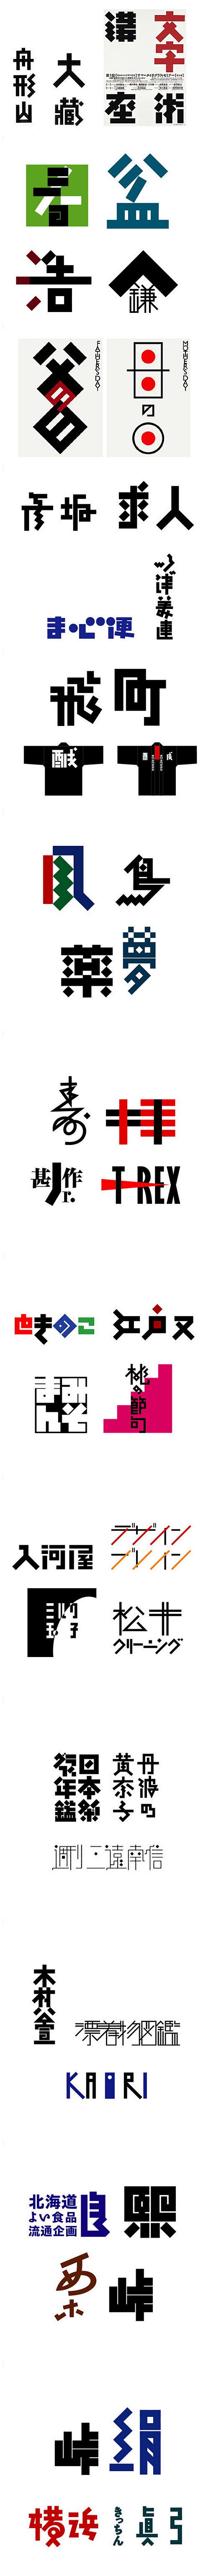 日本设计师味冈伸太郎 — 字体设计